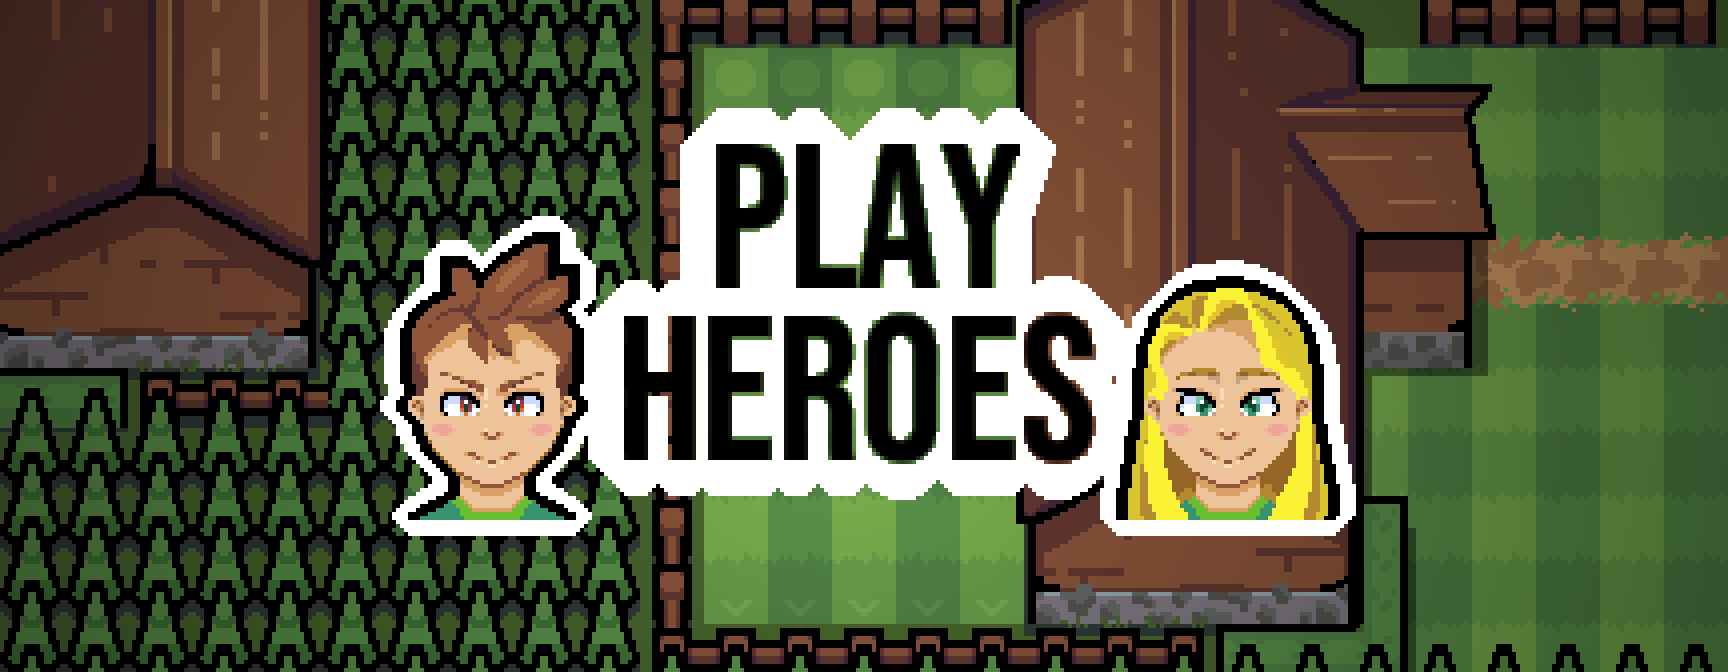 Play Heroes